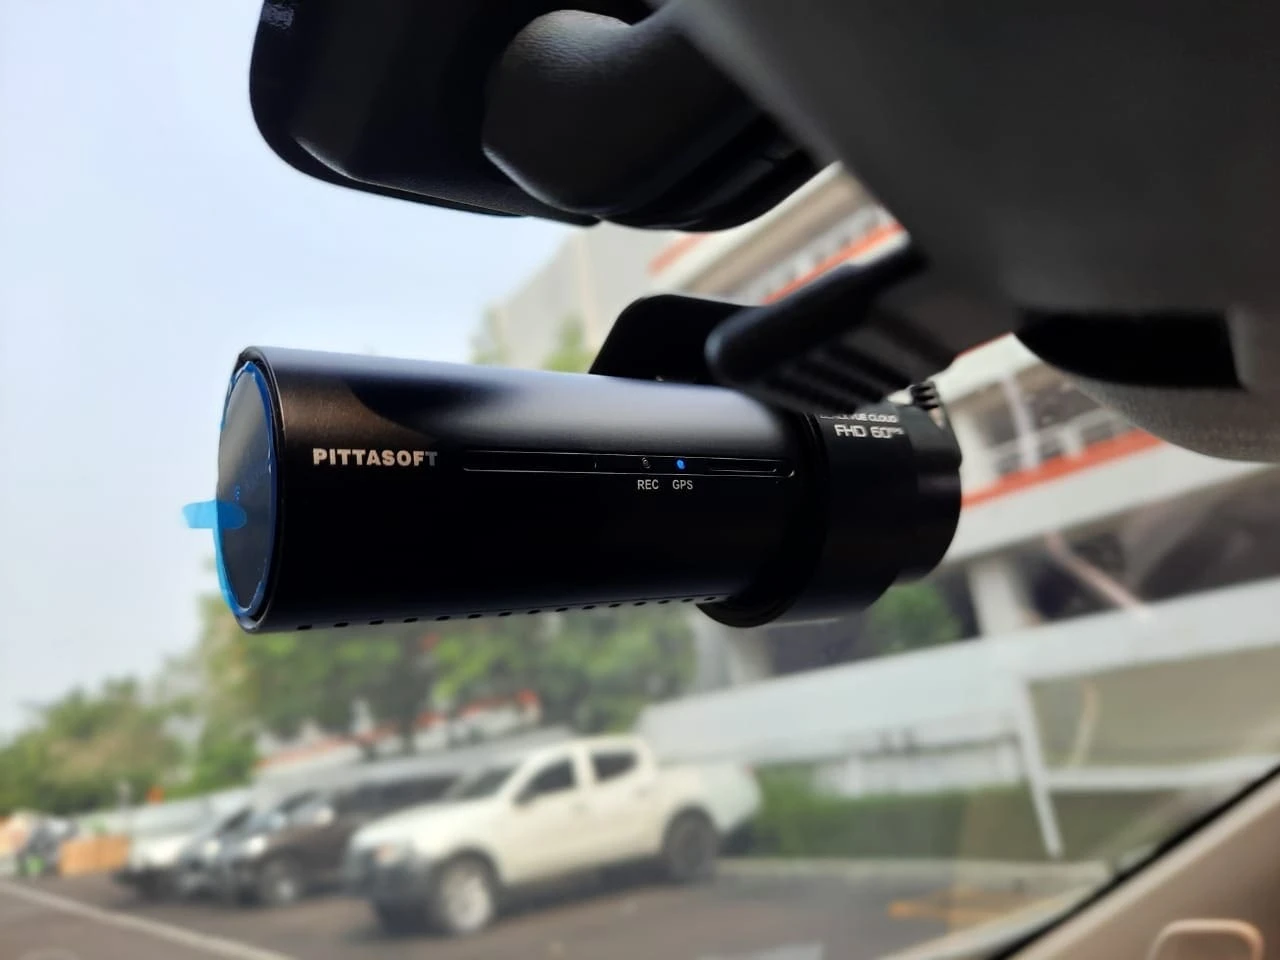 Pentingnya Dashboard Camera di Mobil Sebagai Peranti Keamanan